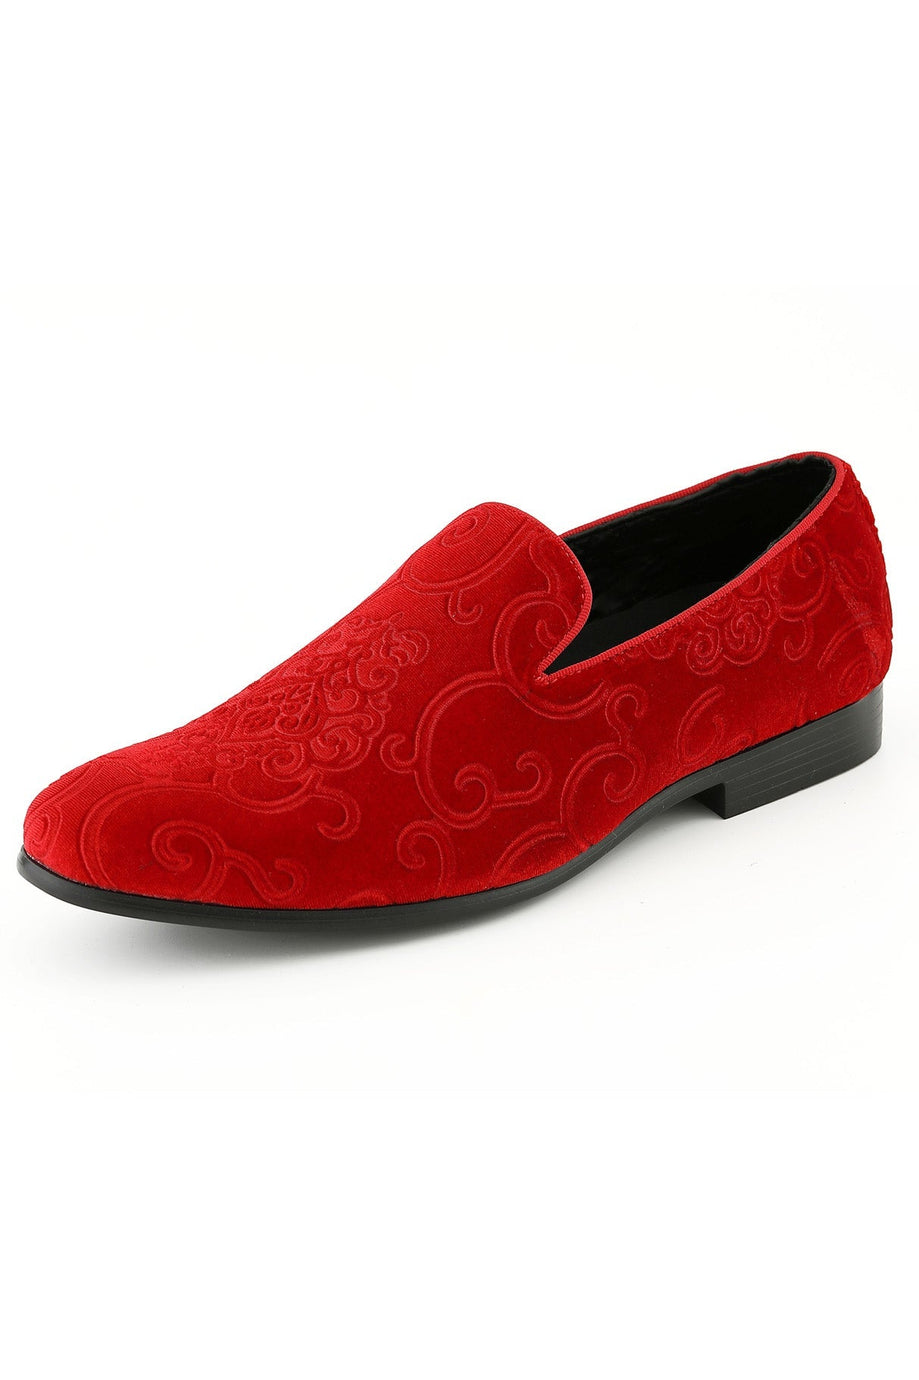 Amali "Bryant" Red Tuxedo Shoes